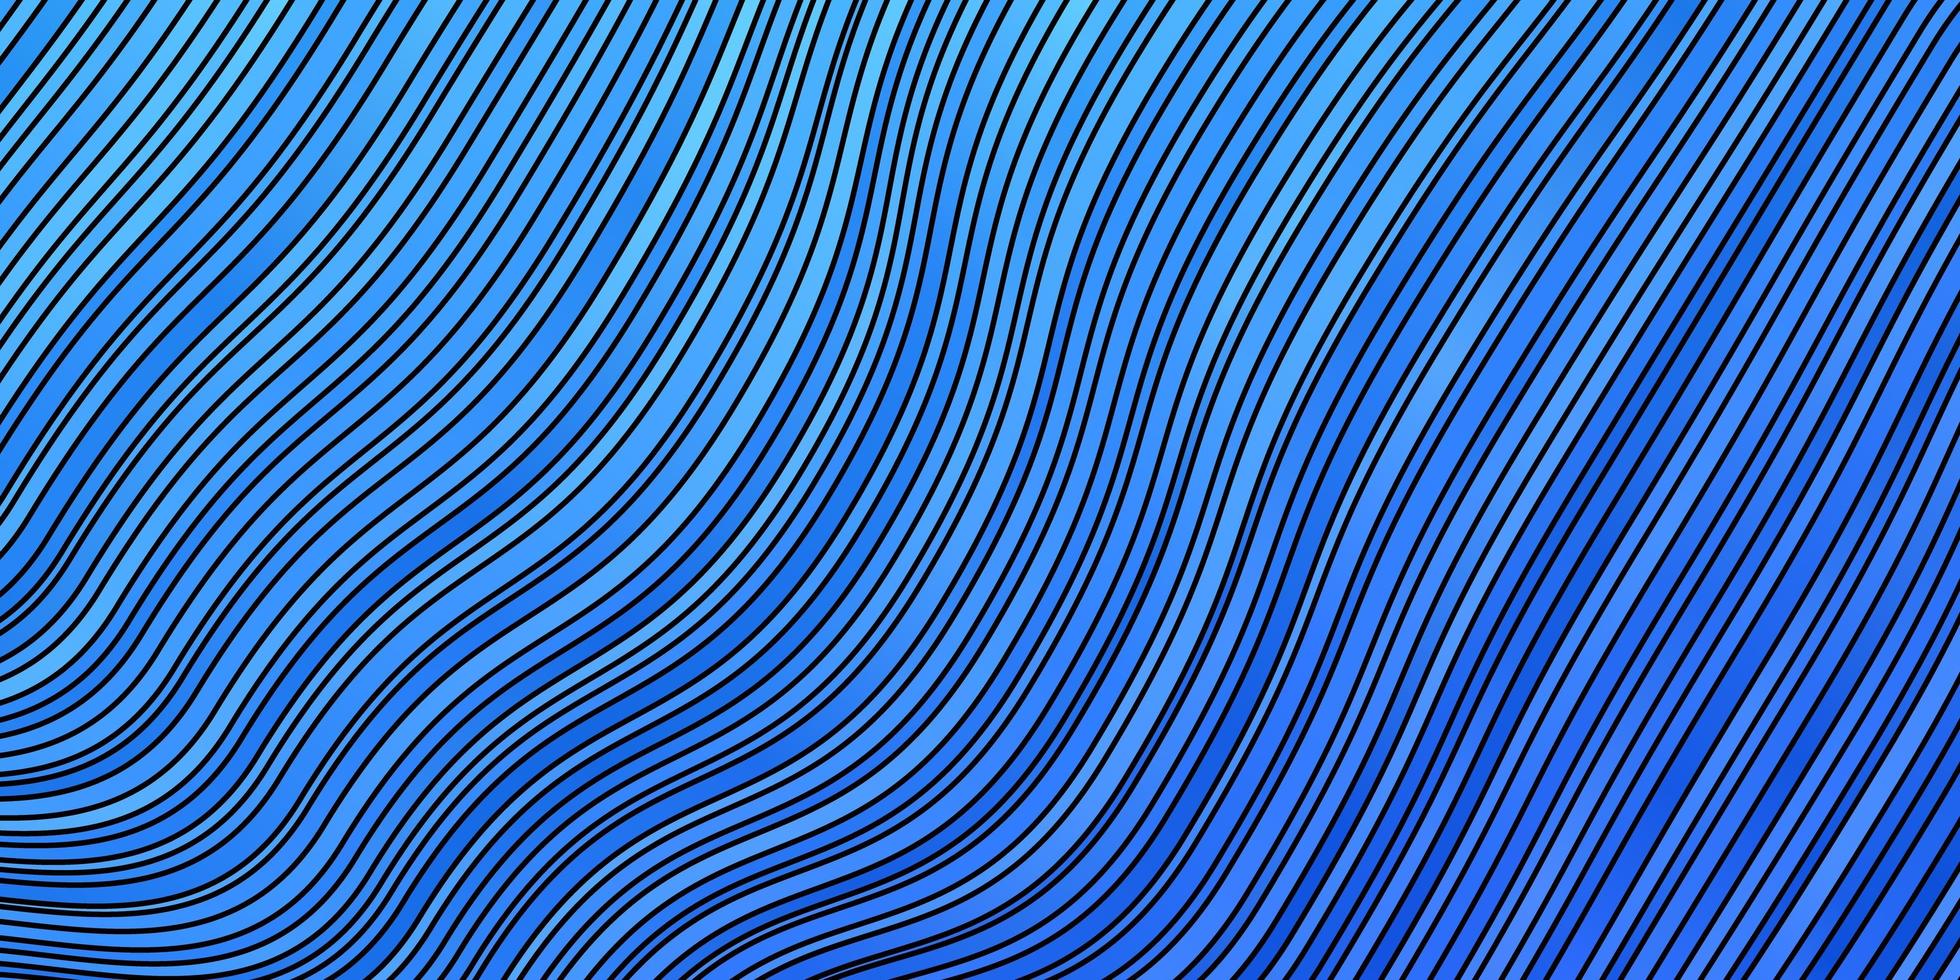 pano de fundo azul claro com curvas vetor